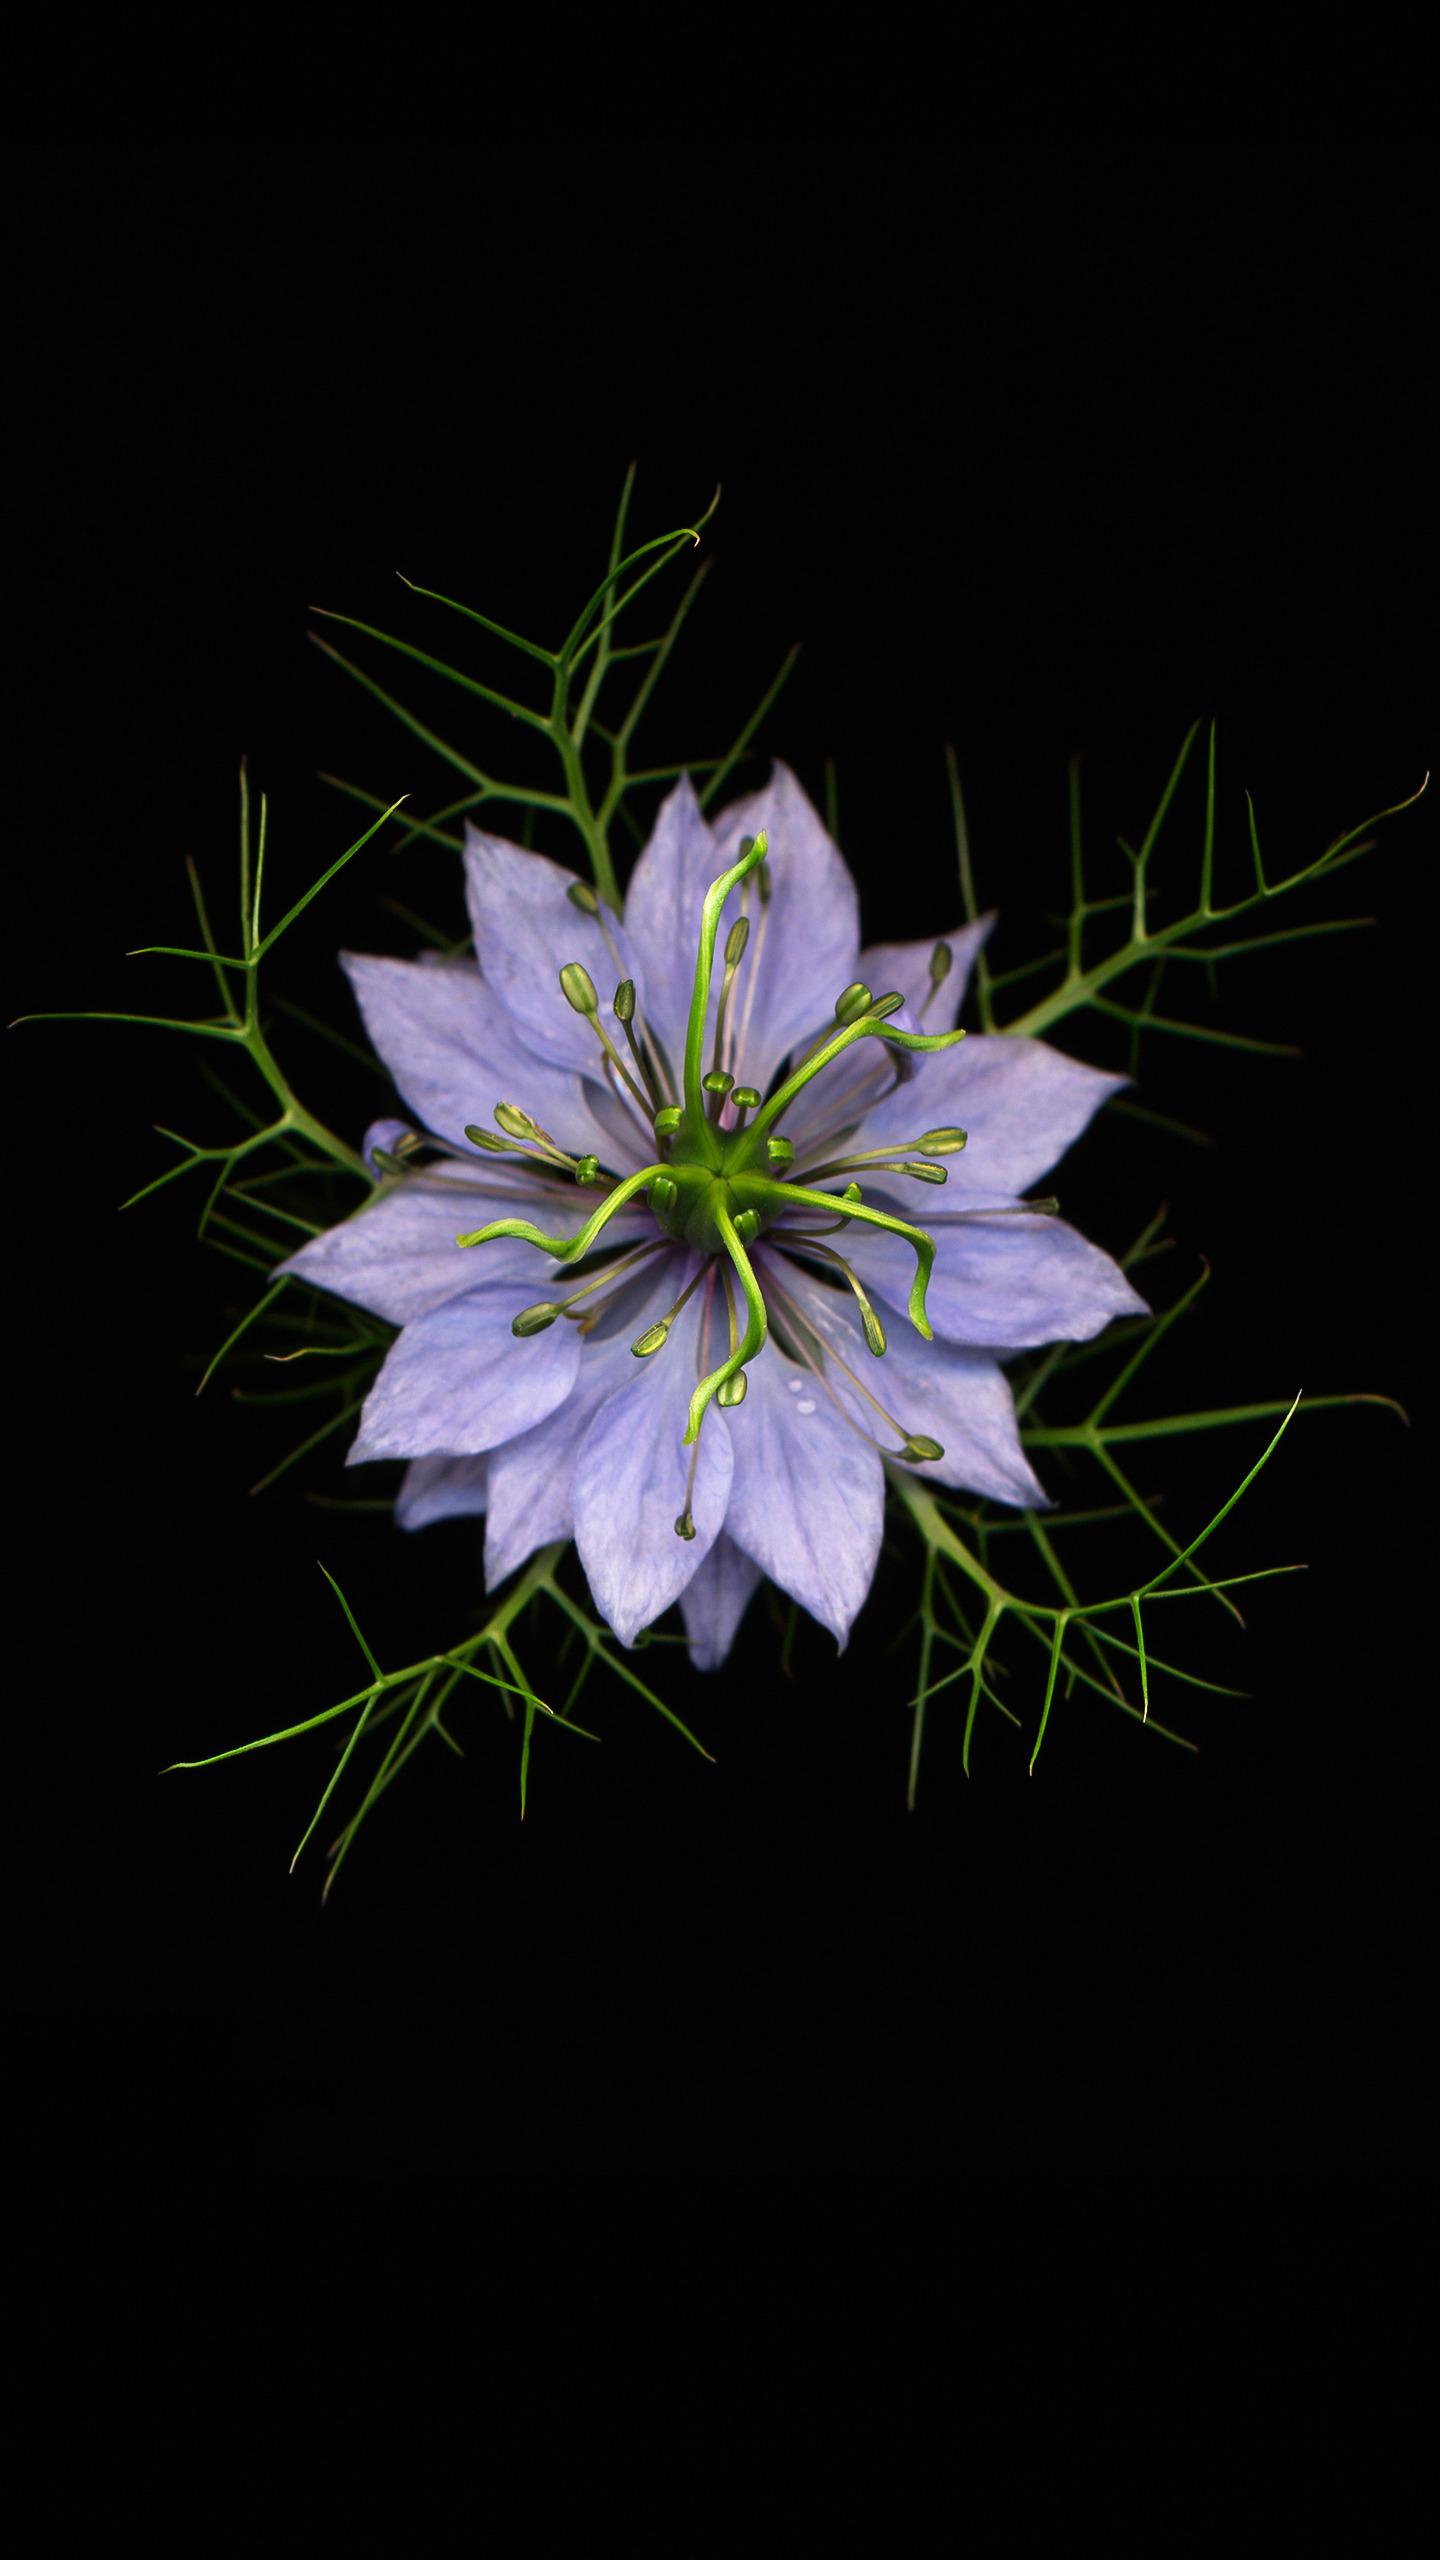 黑种草—华为杂志锁屏长着带花边的鲜绿色叶子,开白色或者蓝紫色的花